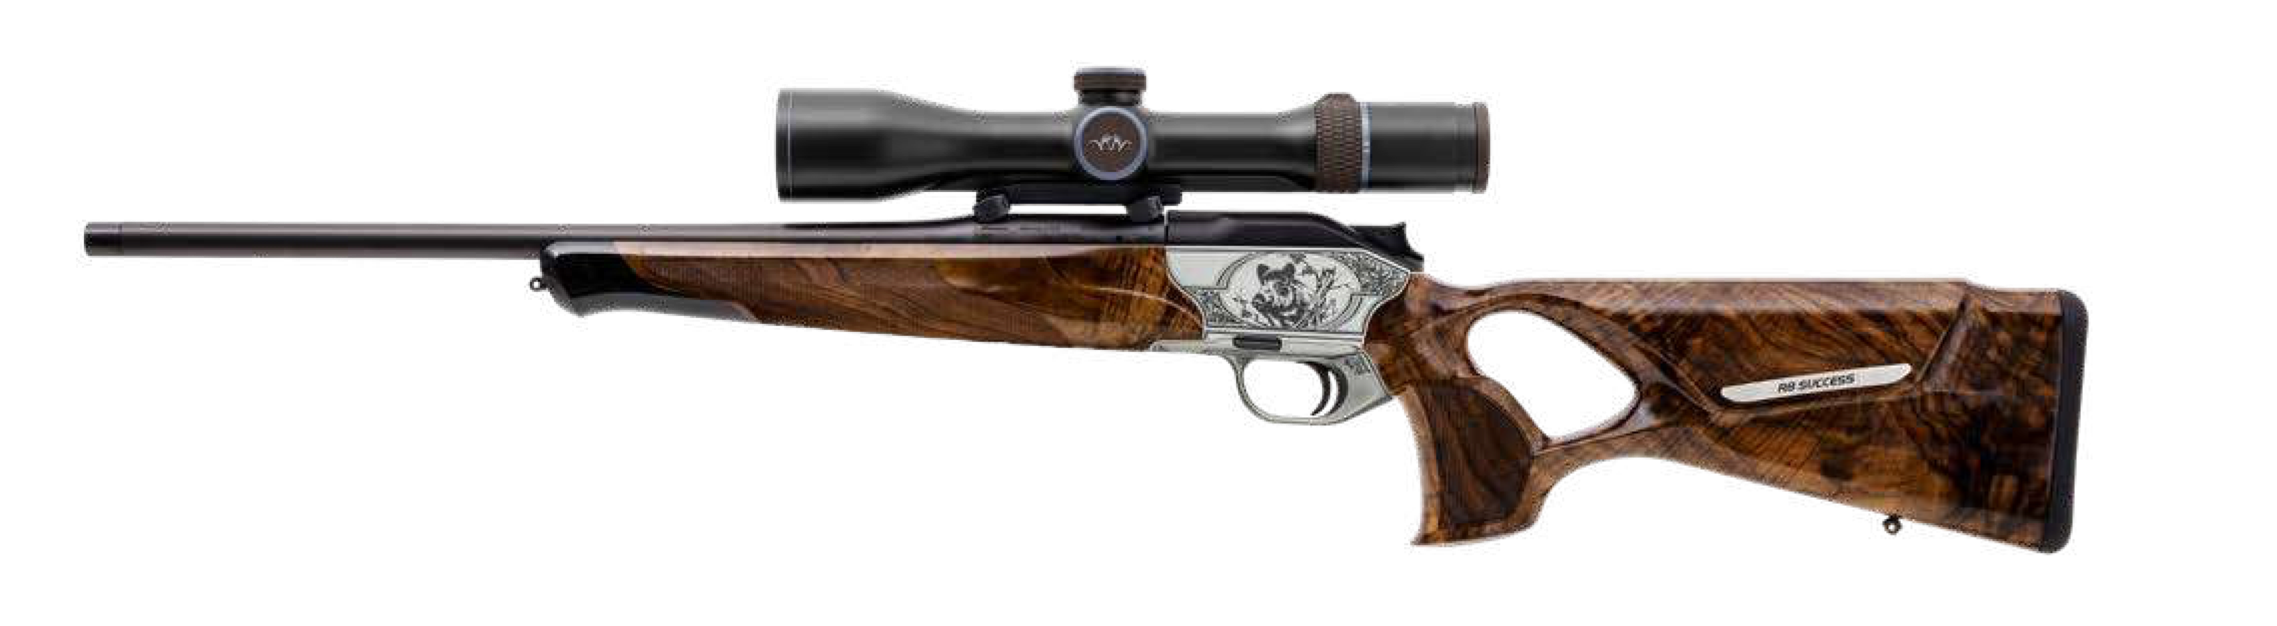 R8 Success Luxus Rifle